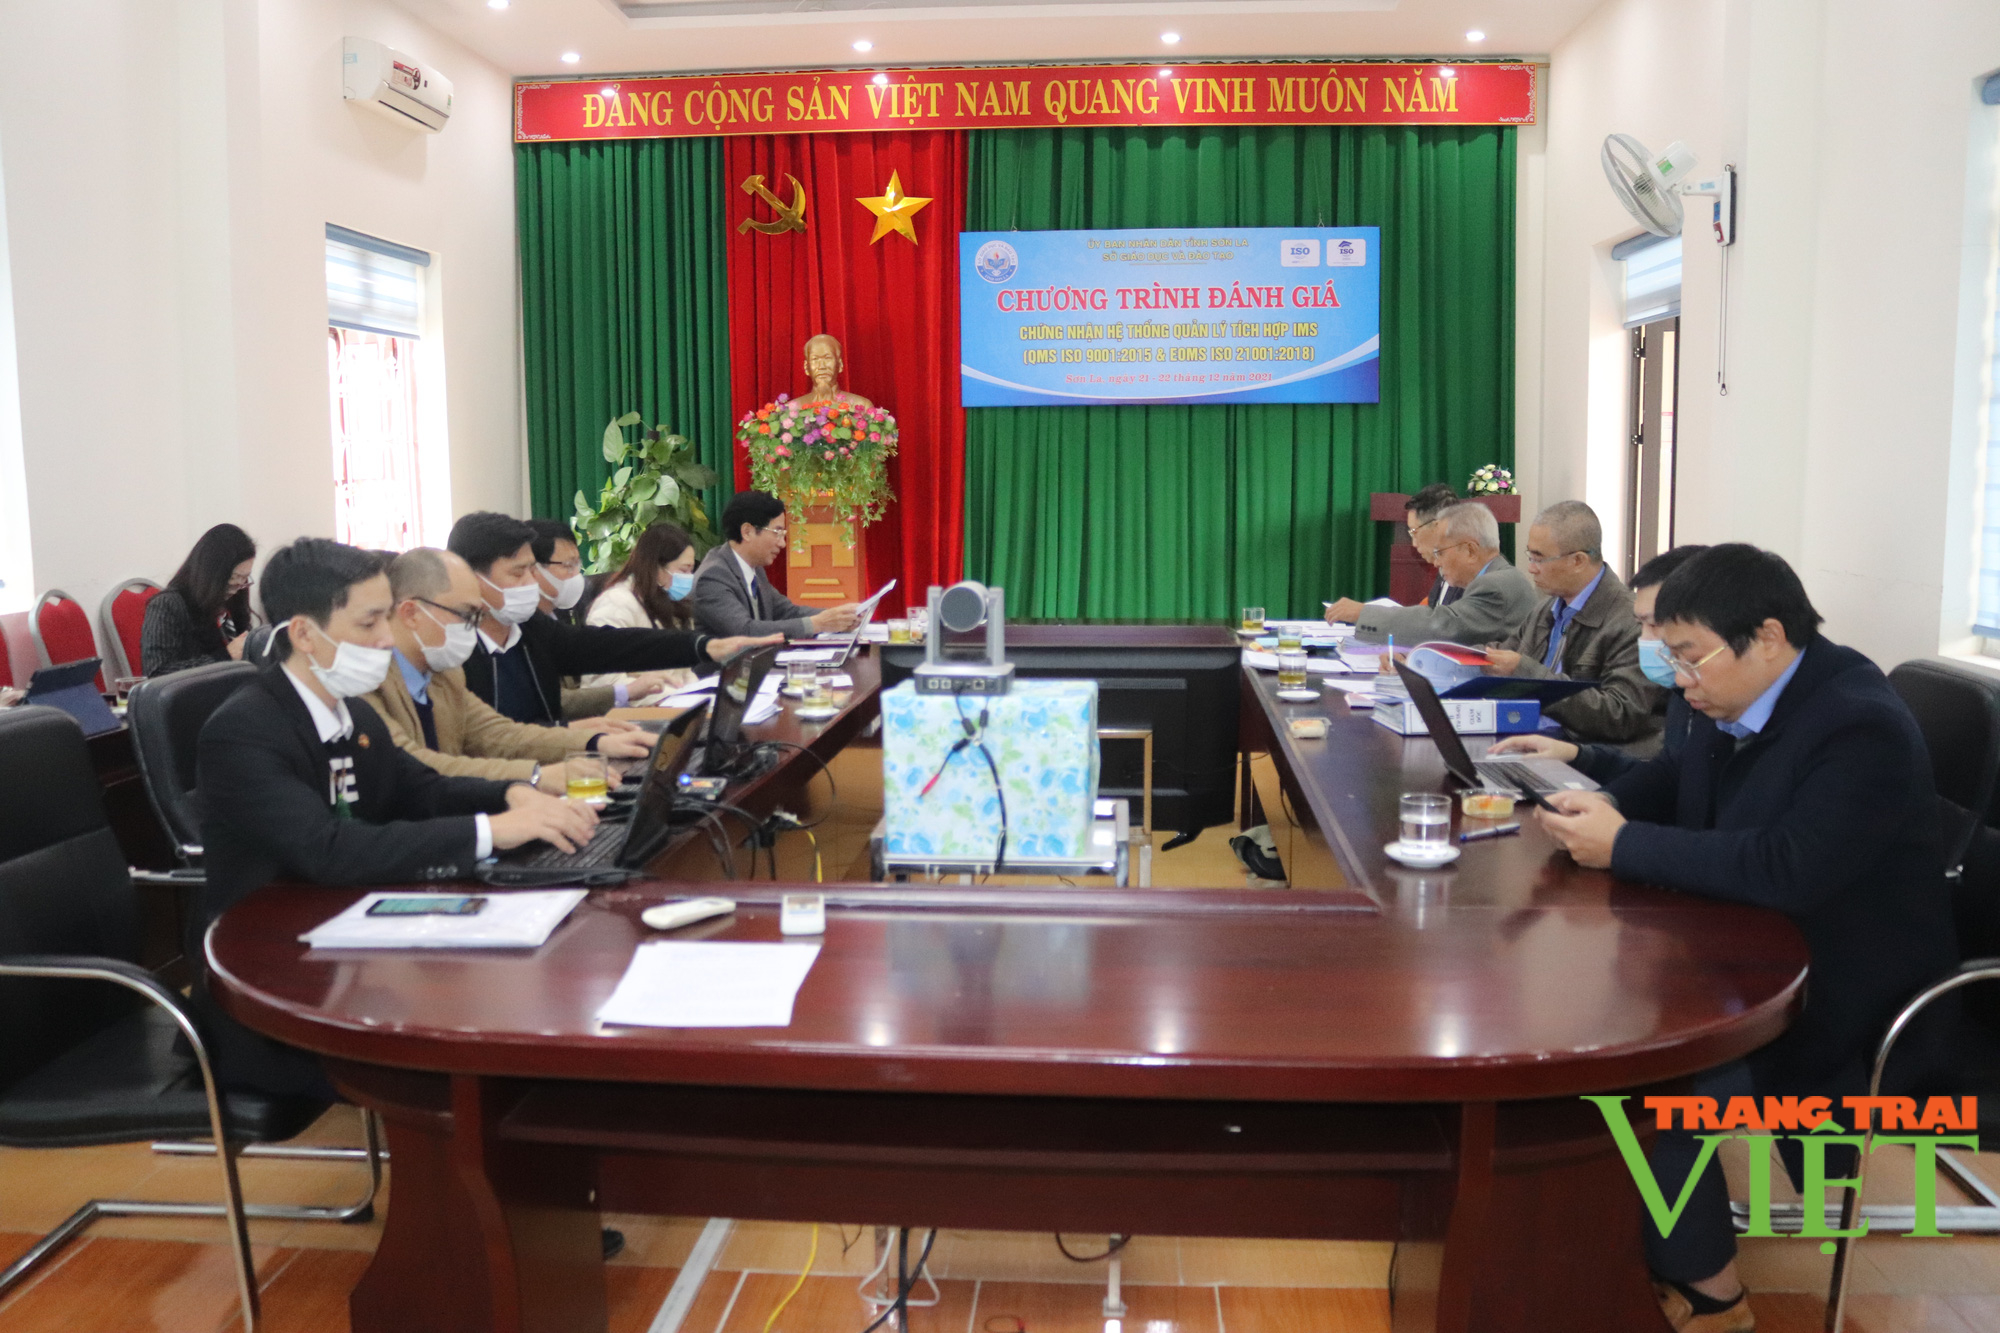 Sở GDĐT Sơn La – đơn vị đầu tiên ở Việt Nam áp dụng và vận hành hệ thống tích hợp IMS - Ảnh 1.